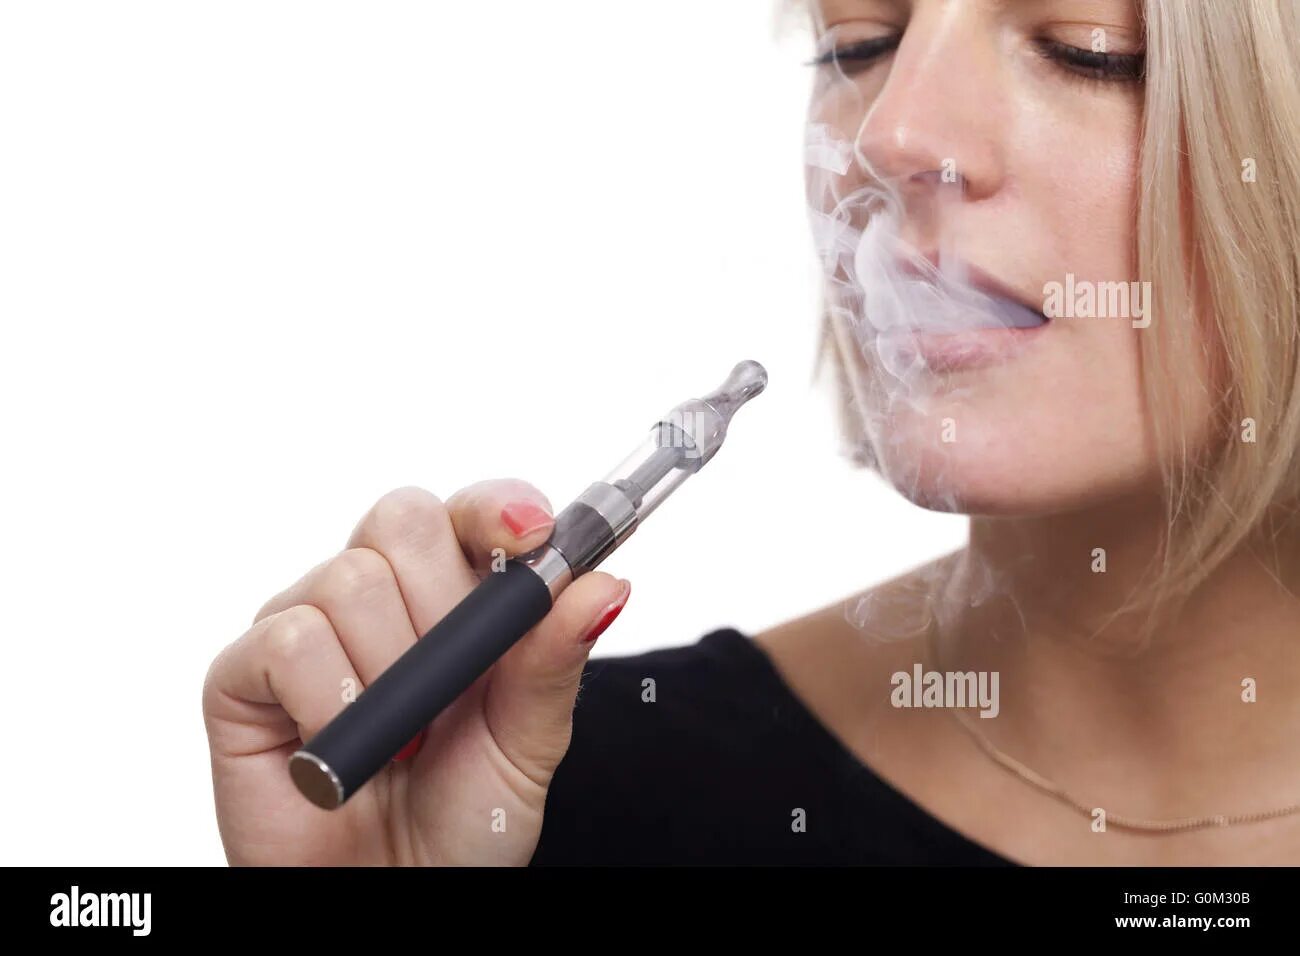 Курильная с женщинами. Электронные сигареты стоковые фото. Woman smoking e cigarette. Alexander Lukatskiy woman smoking Electronic cigarette.